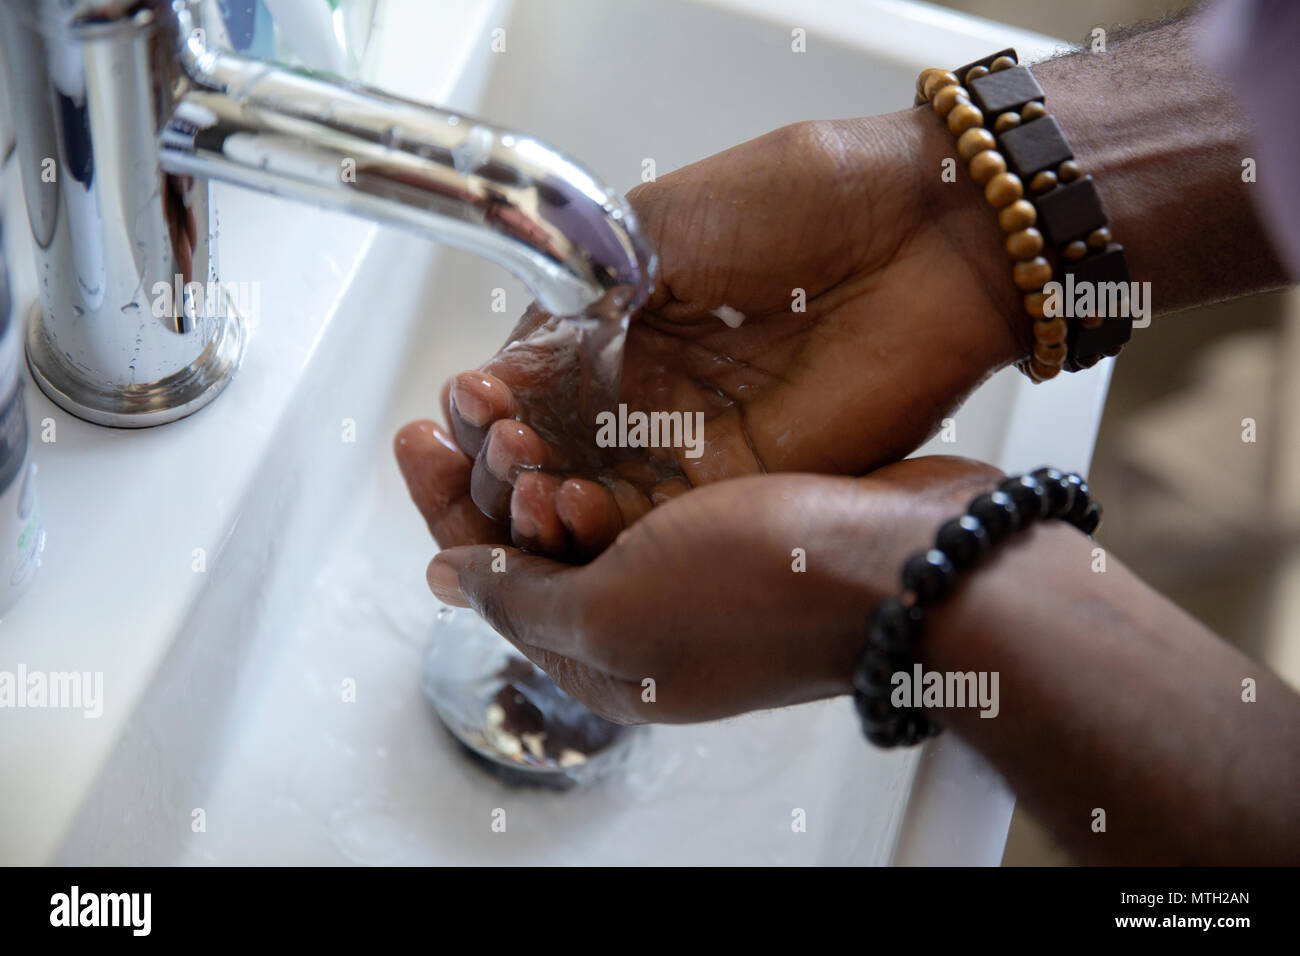 Man washing hands in basin Stock Photo